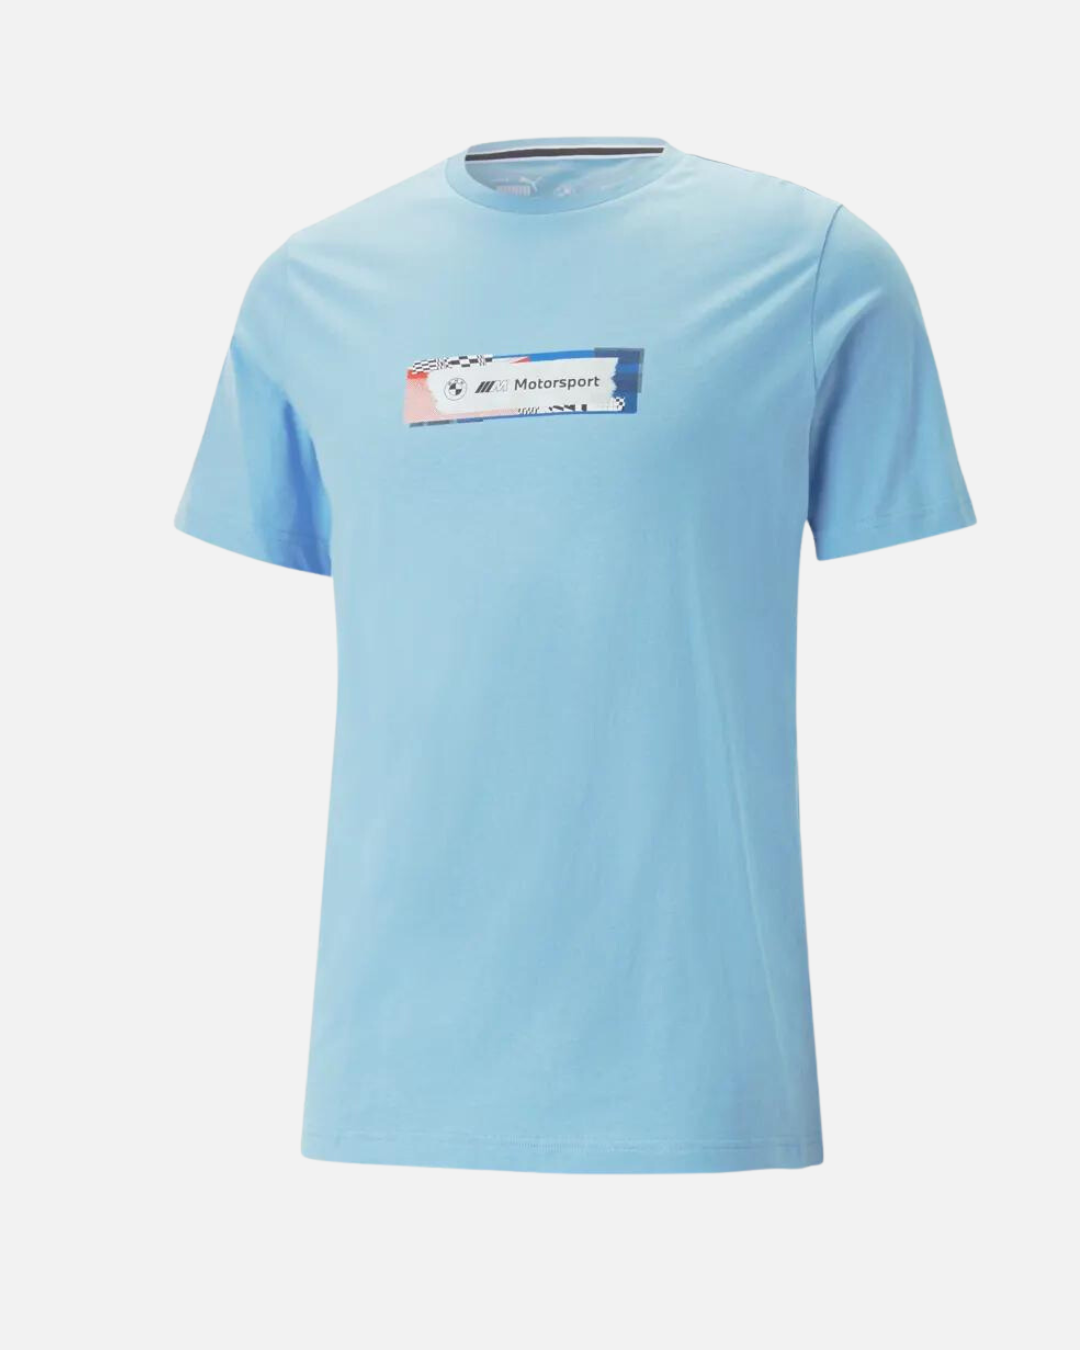 Footkorner Statement Motorsport - – T-shirt BMW Puma Blue